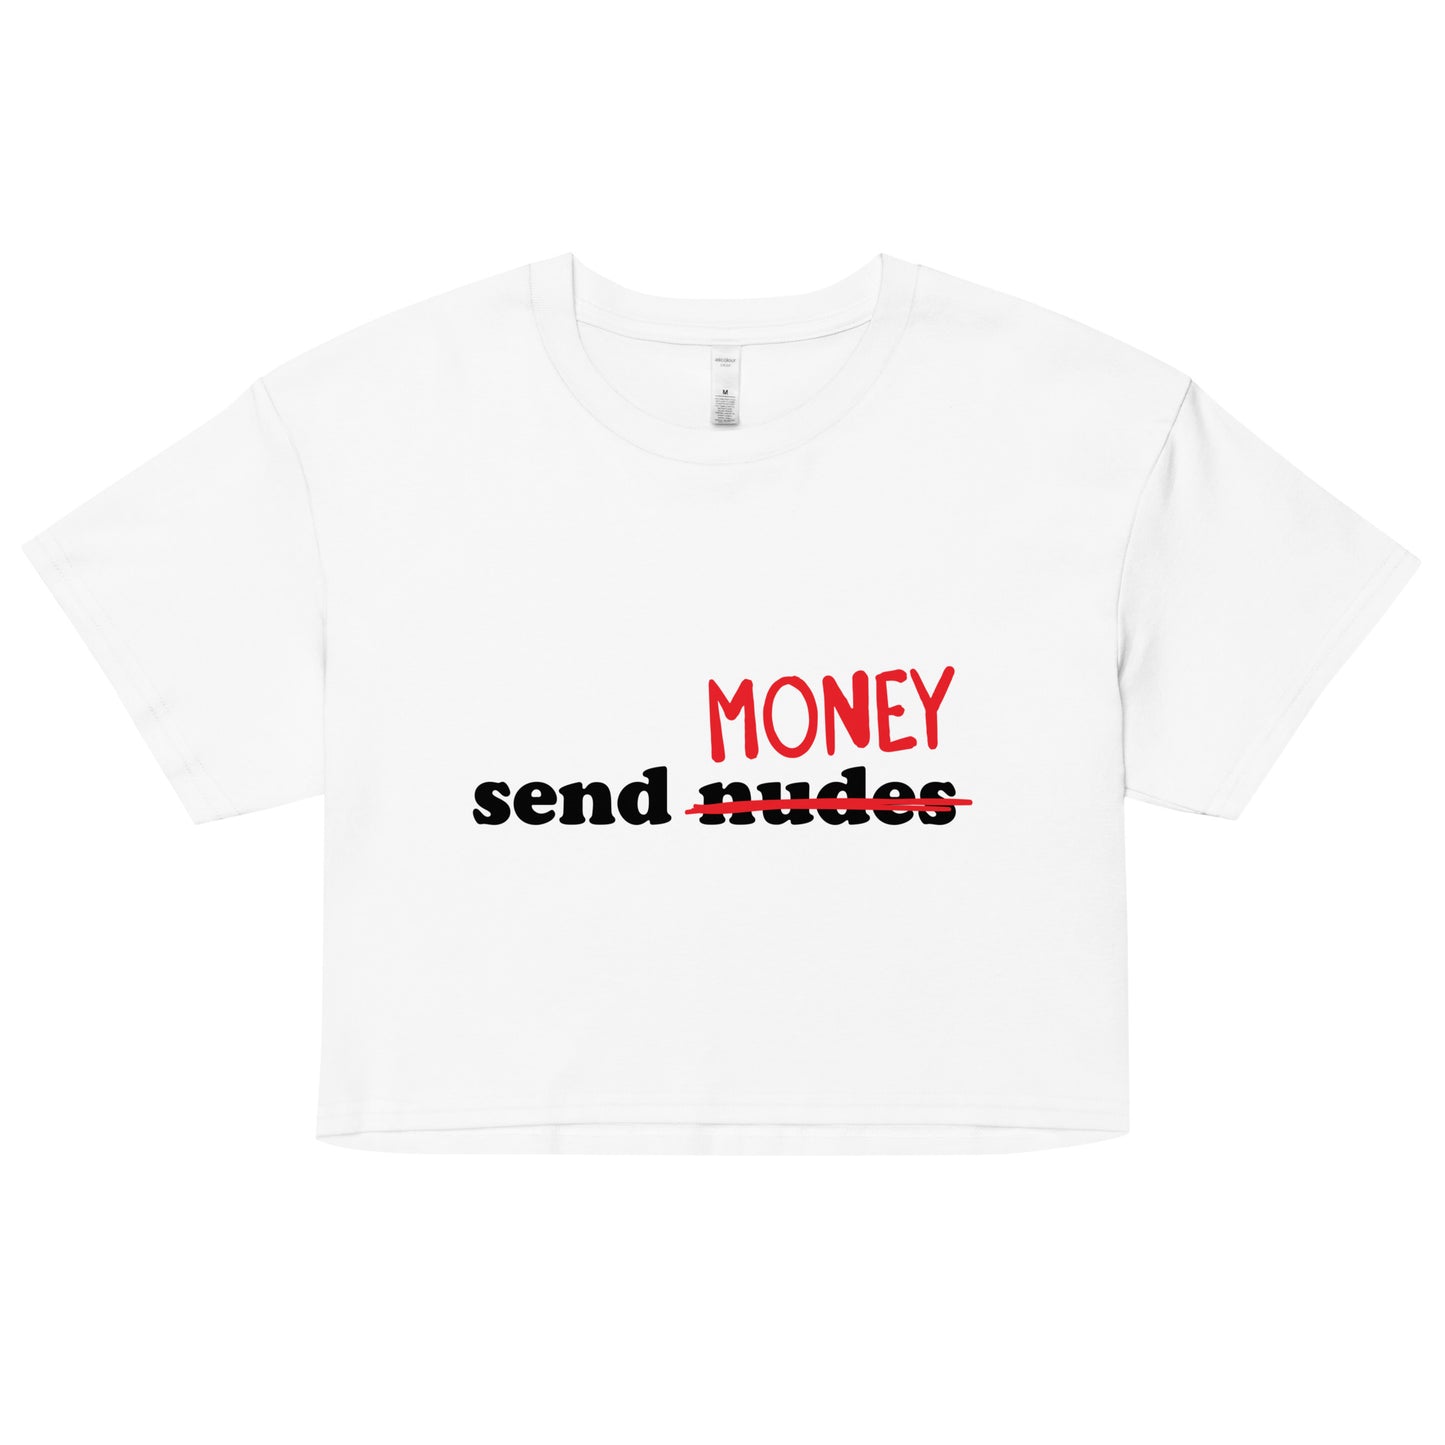 Send Money crop top